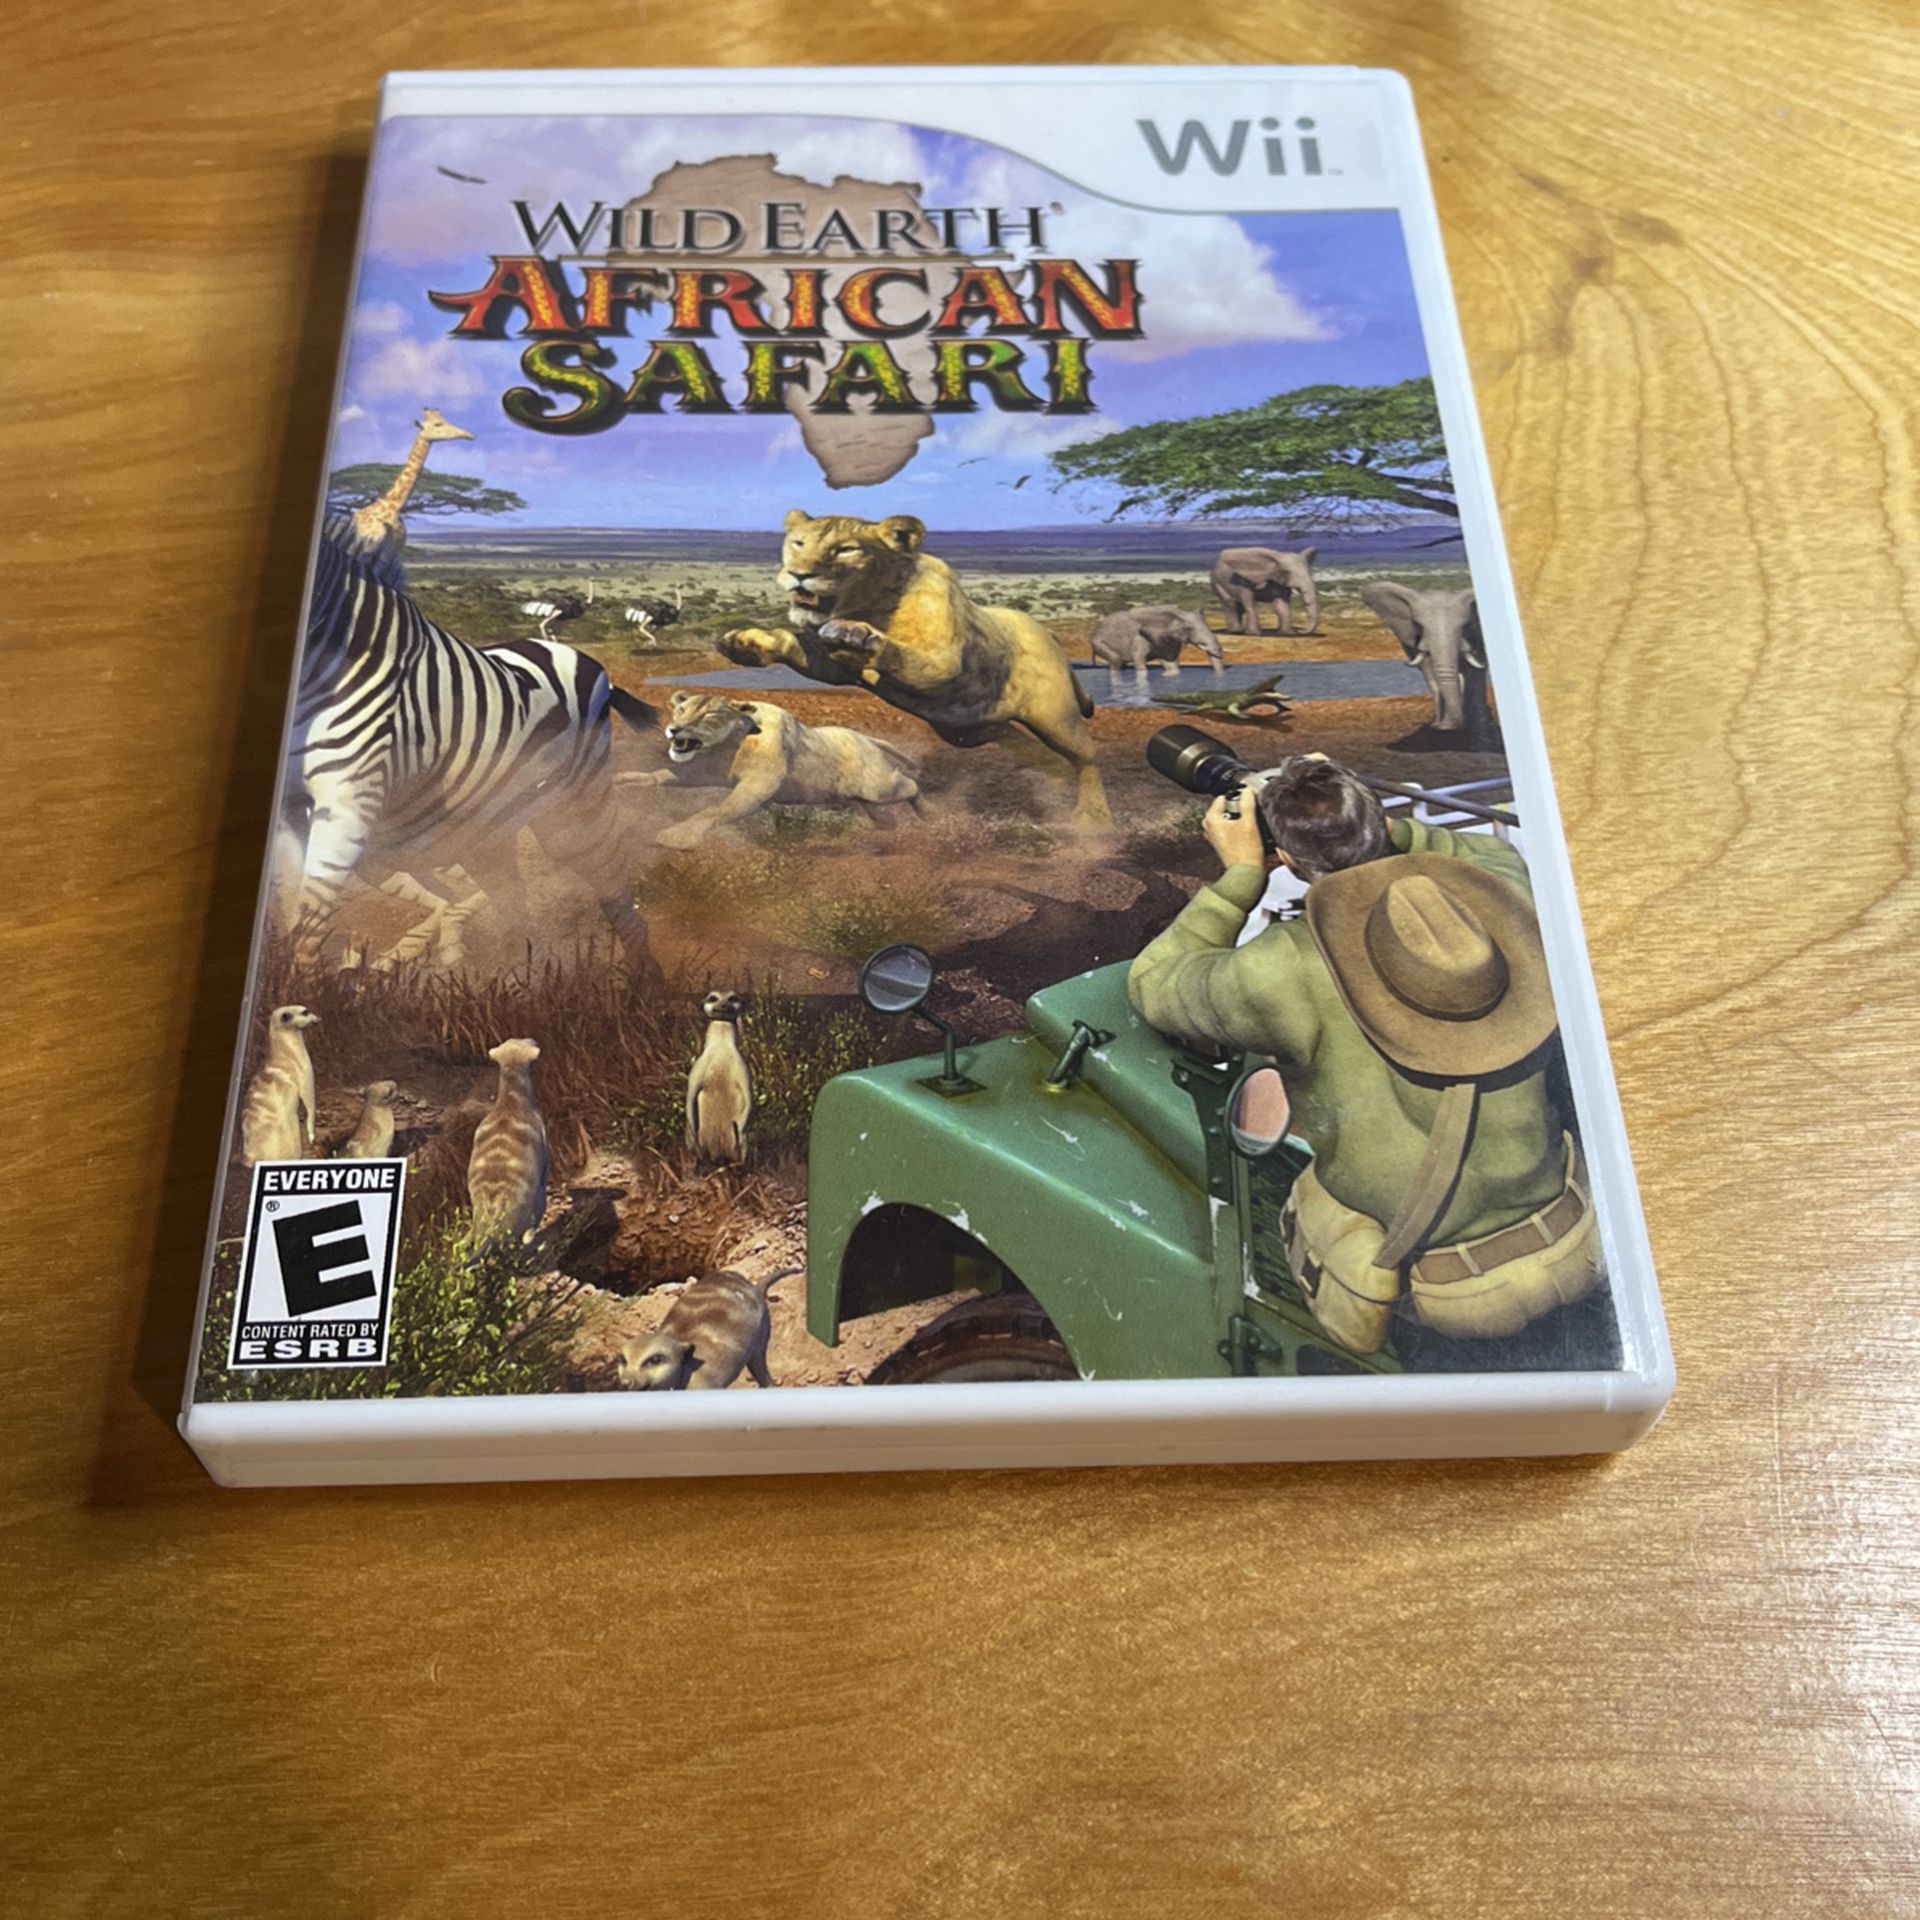 Nintendo Wii - Wild Earth African Safari